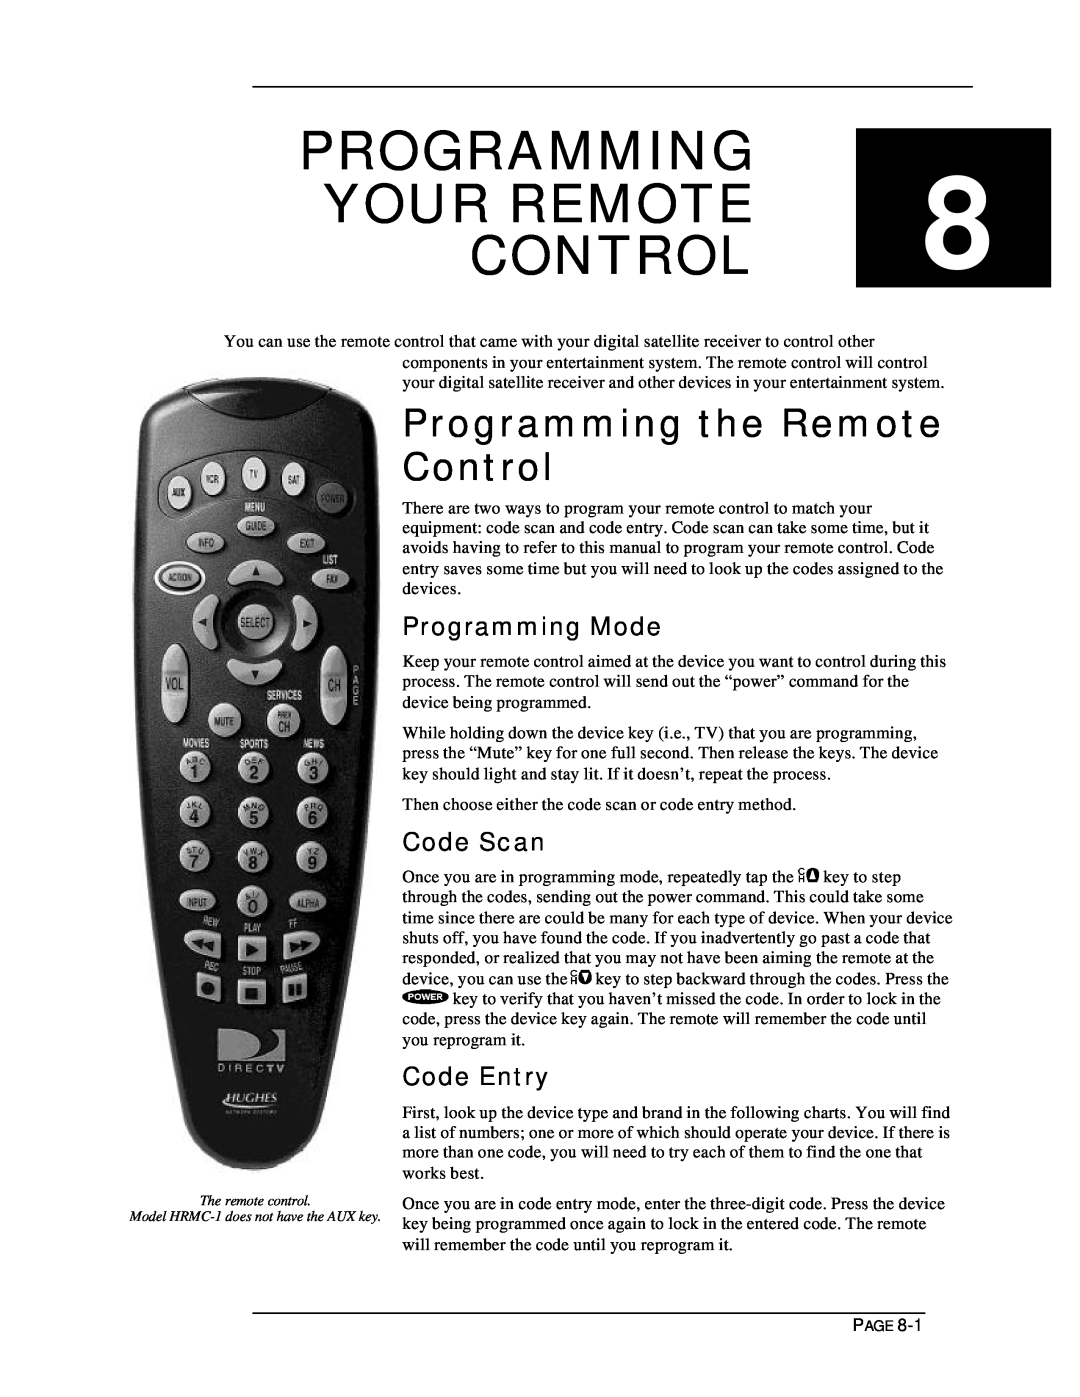 DirecTV HIRD-E11, HIRD-E25 PROGRAMMING YOUR REMOTE 8 CONTROL, Programming the Remote Control, Programming Mode, Code Scan 